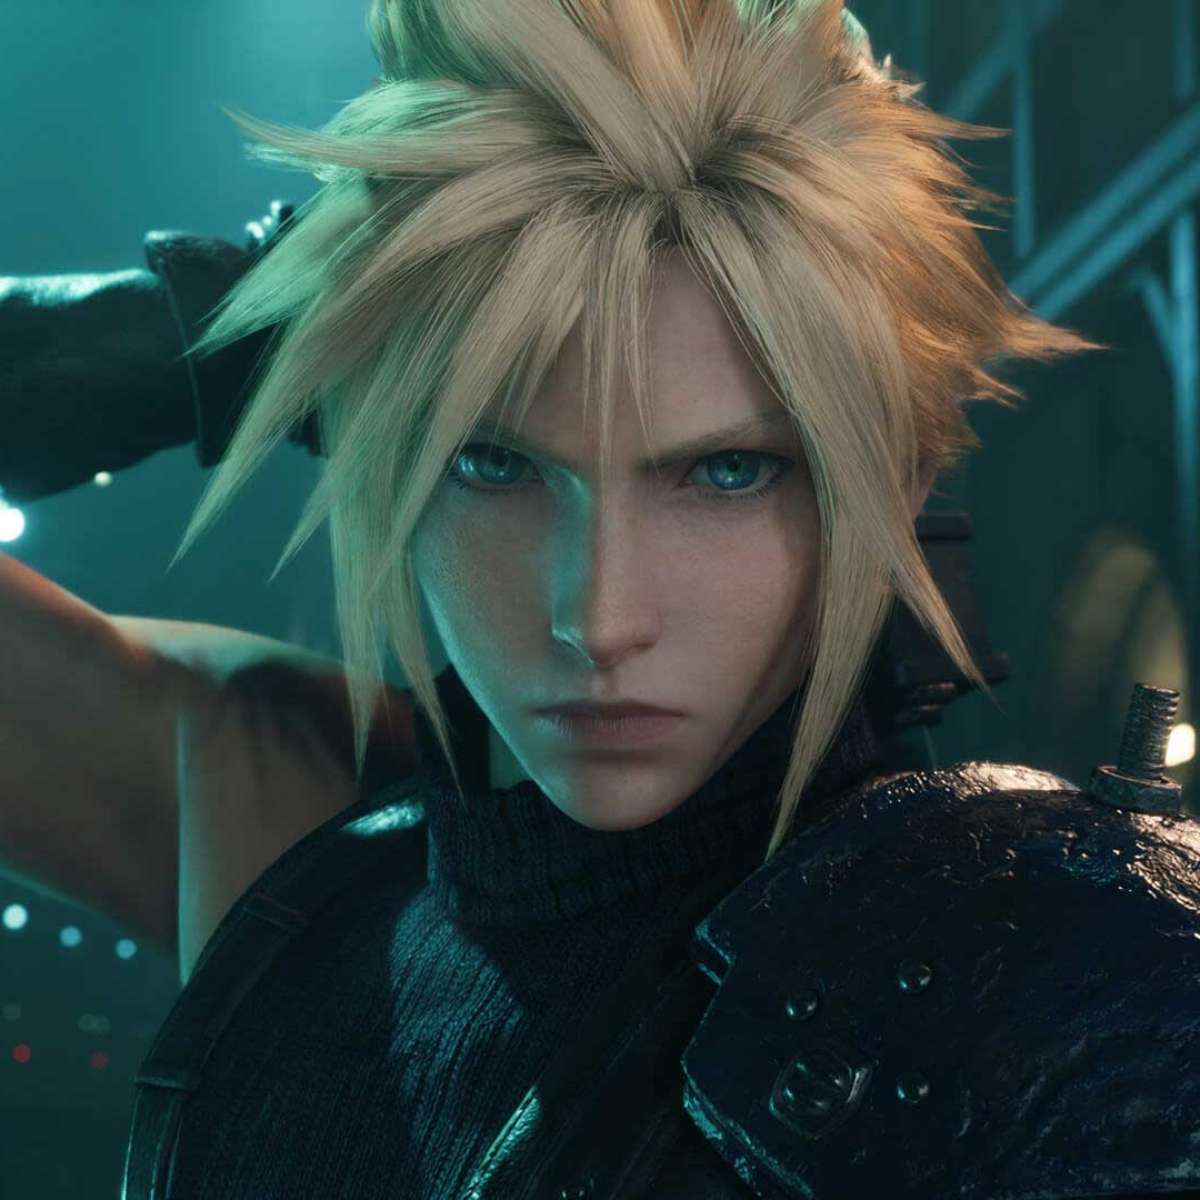 Final Fantasy VII Remake terá novos personagens e chefes de fase